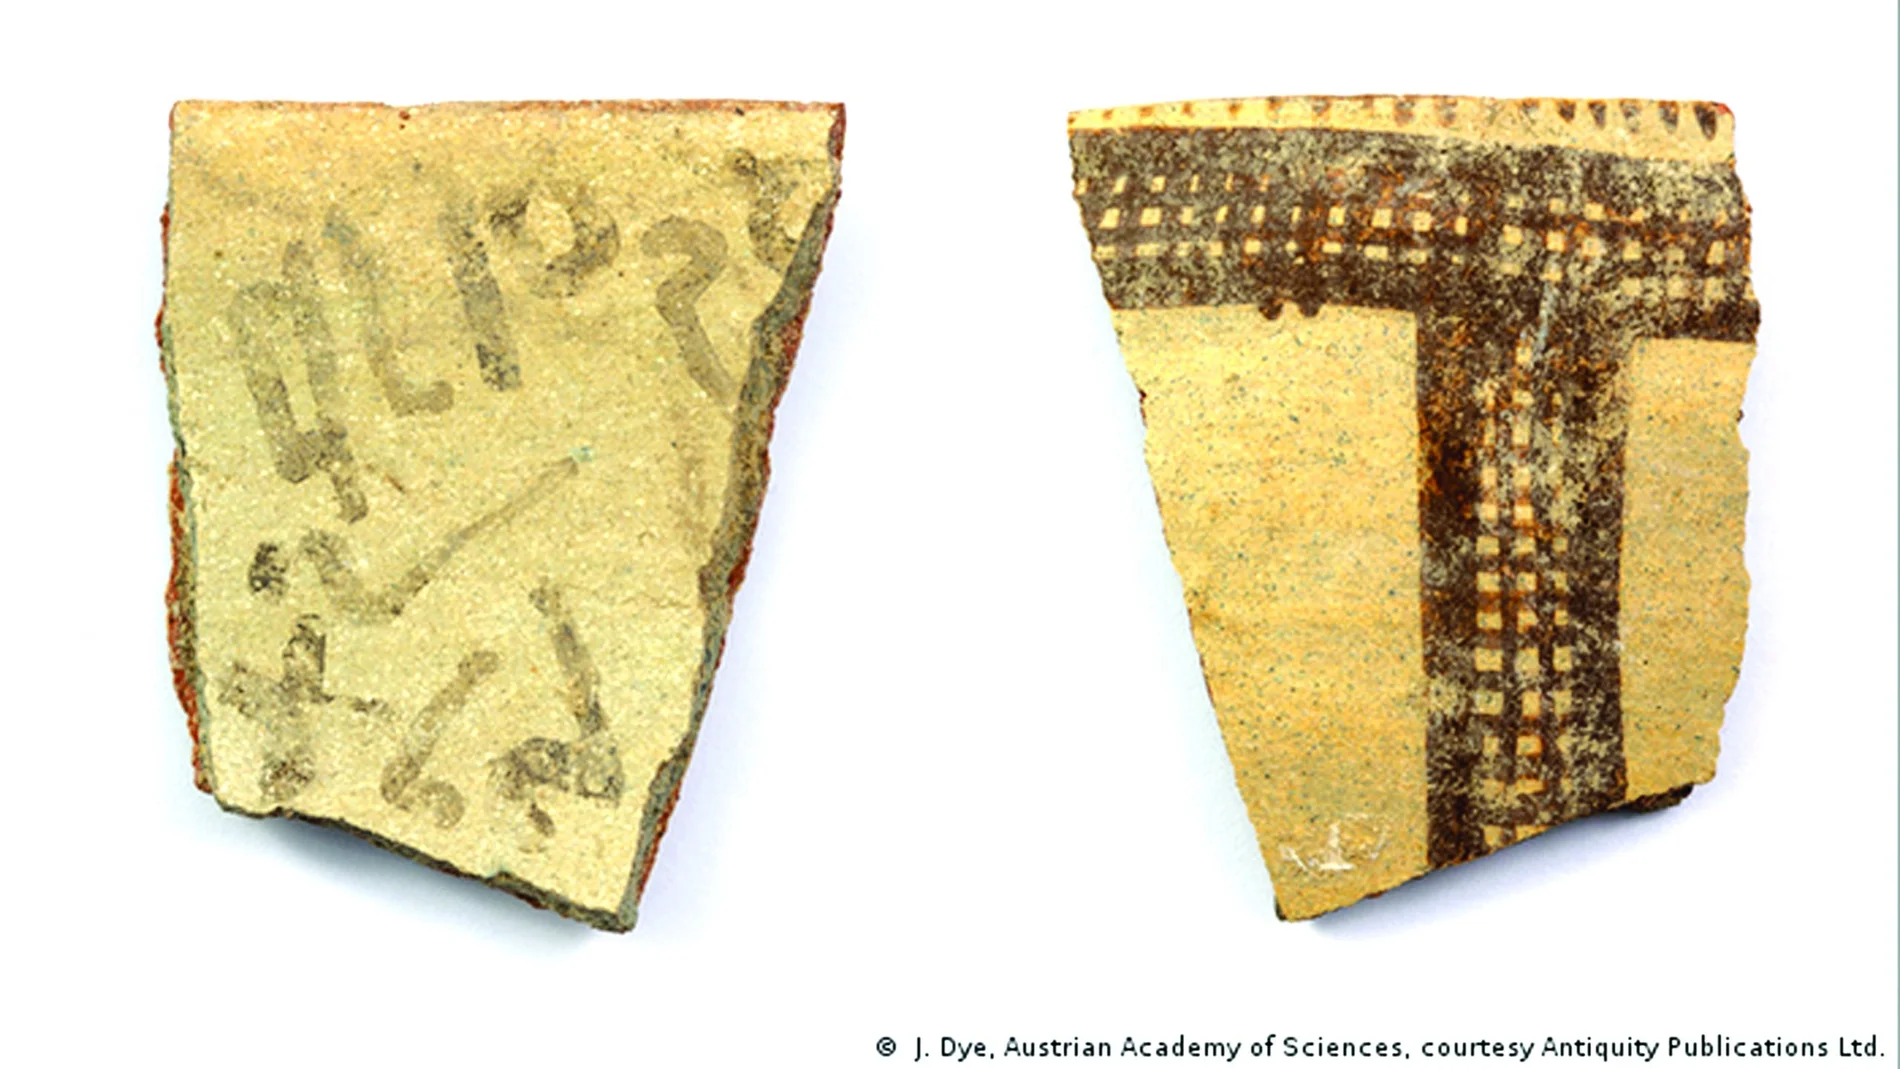 En el fragmento de la izquierda se pueden apreciar los trazos de la palabra que los arqueólogos han identificado